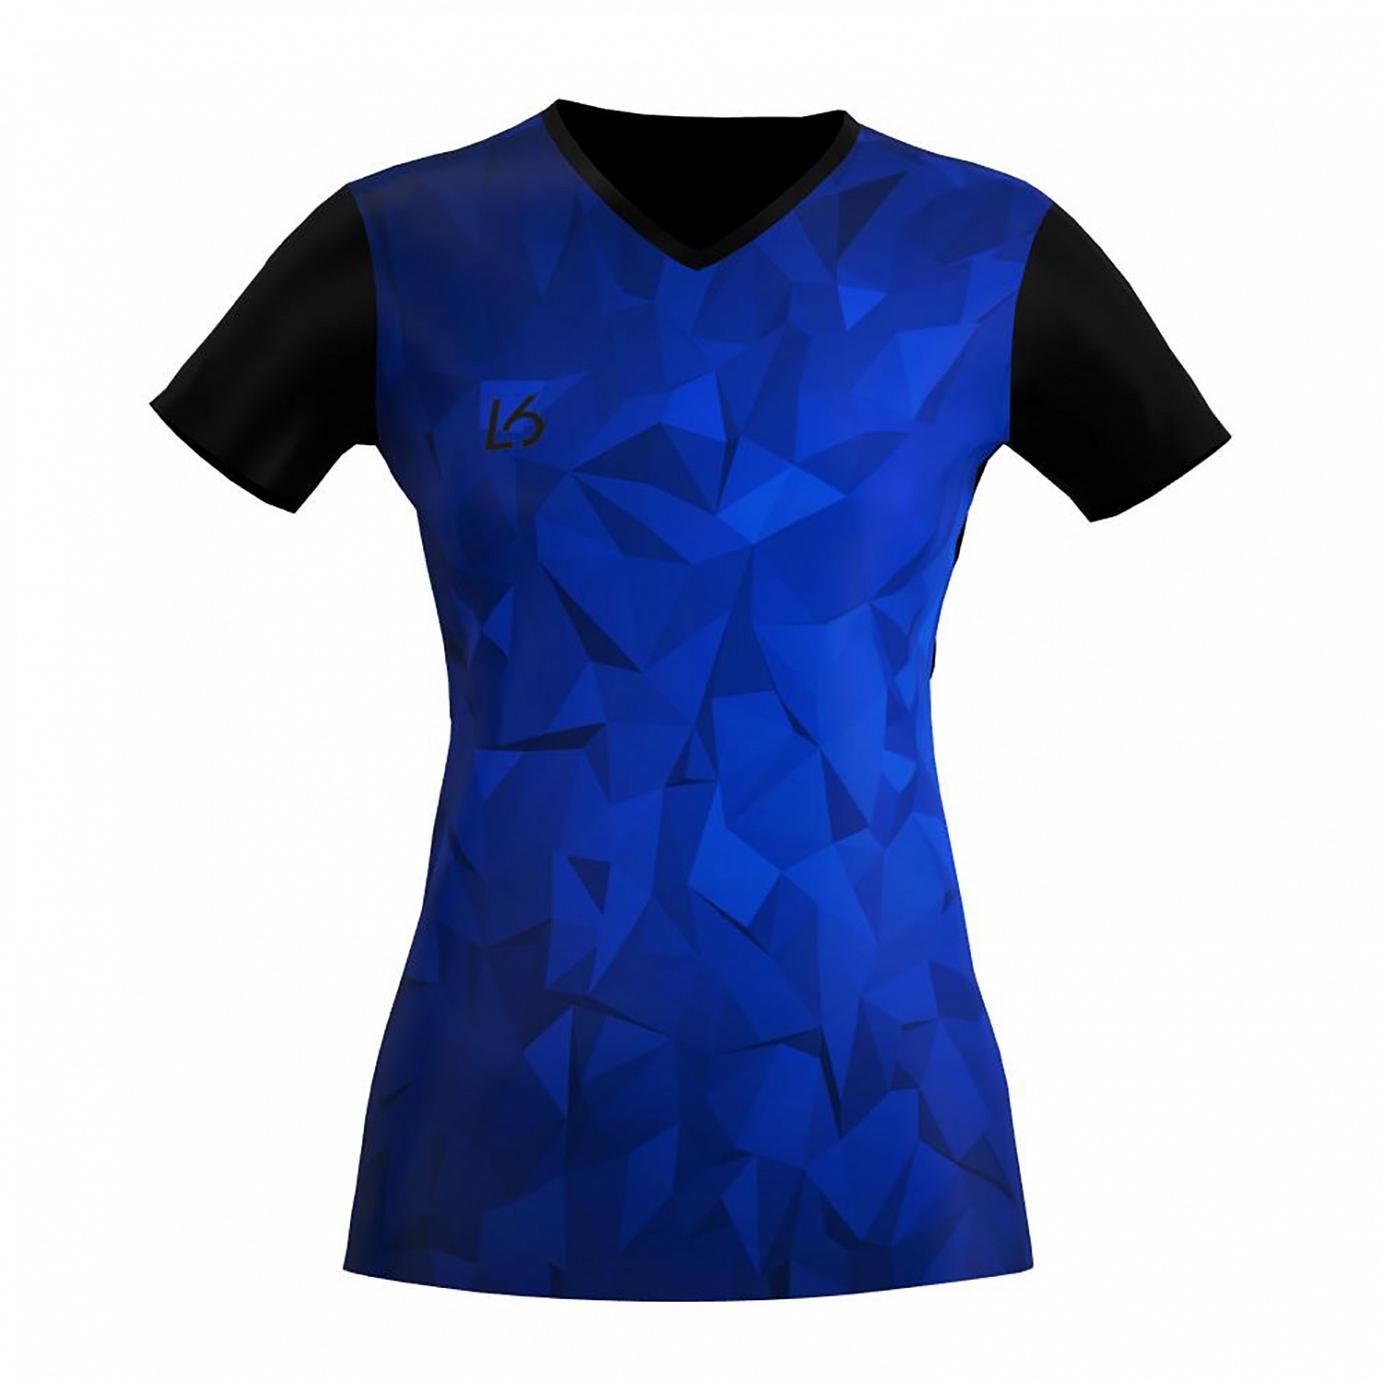 L6 V-Neck Trikot Women - Polygon Blue